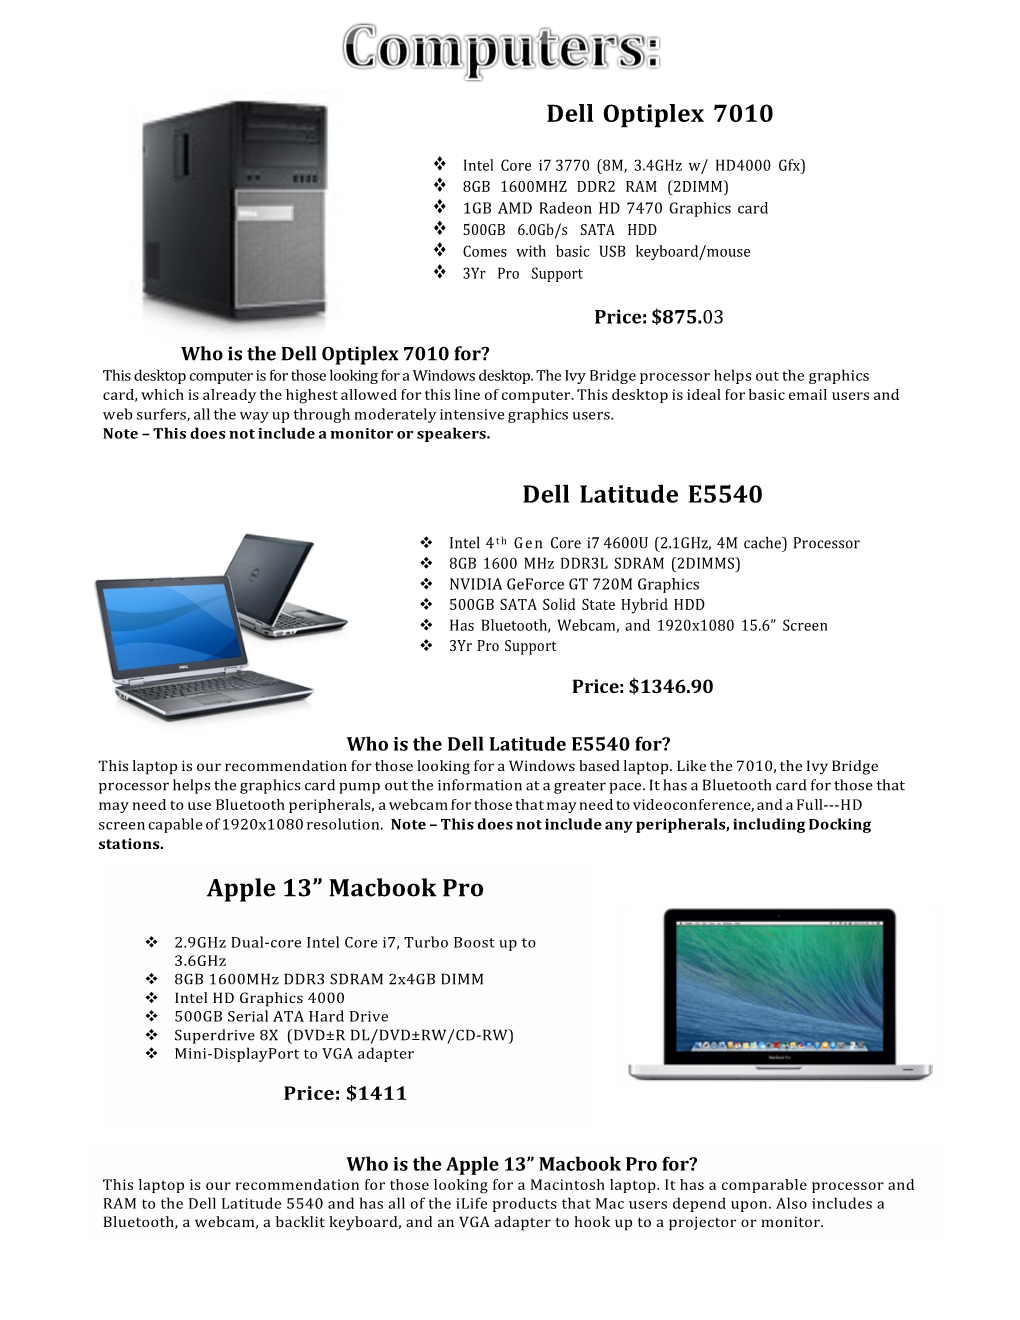 Dell Optiplex 7010 Dell Latitude E5540 Apple 13” Macbook